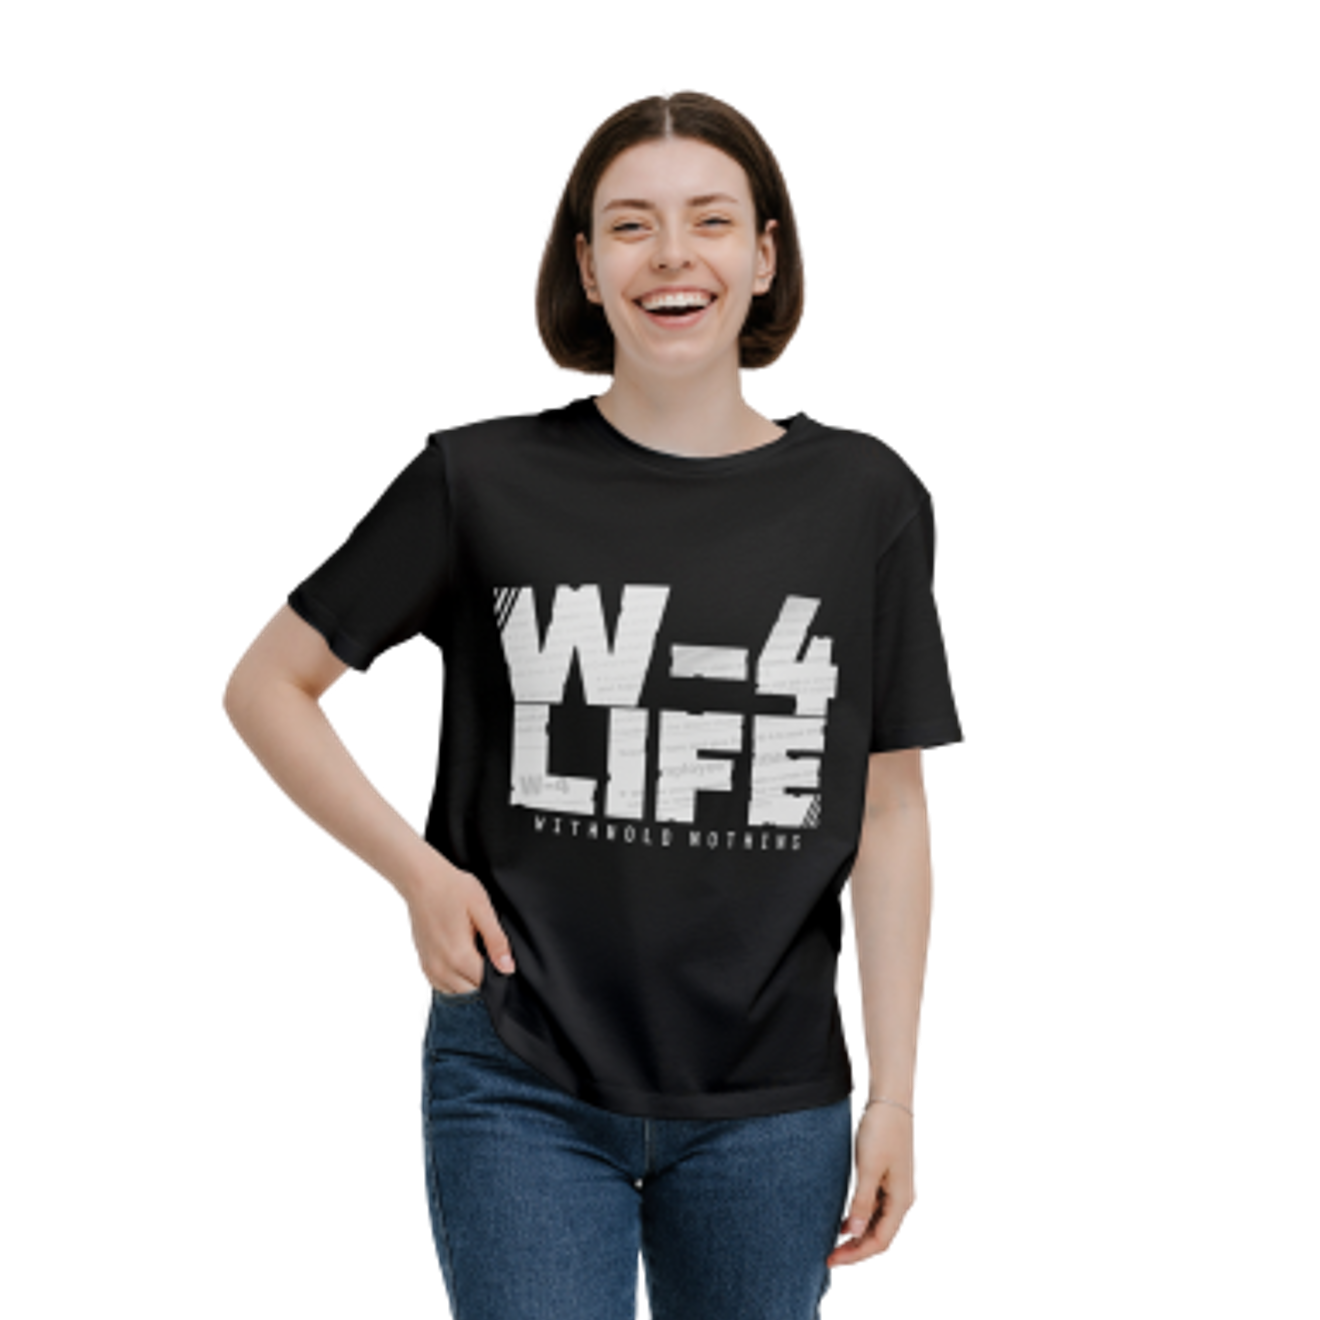 W-4 Life - Withhold Nothing / Black Short Sleeve TShirt